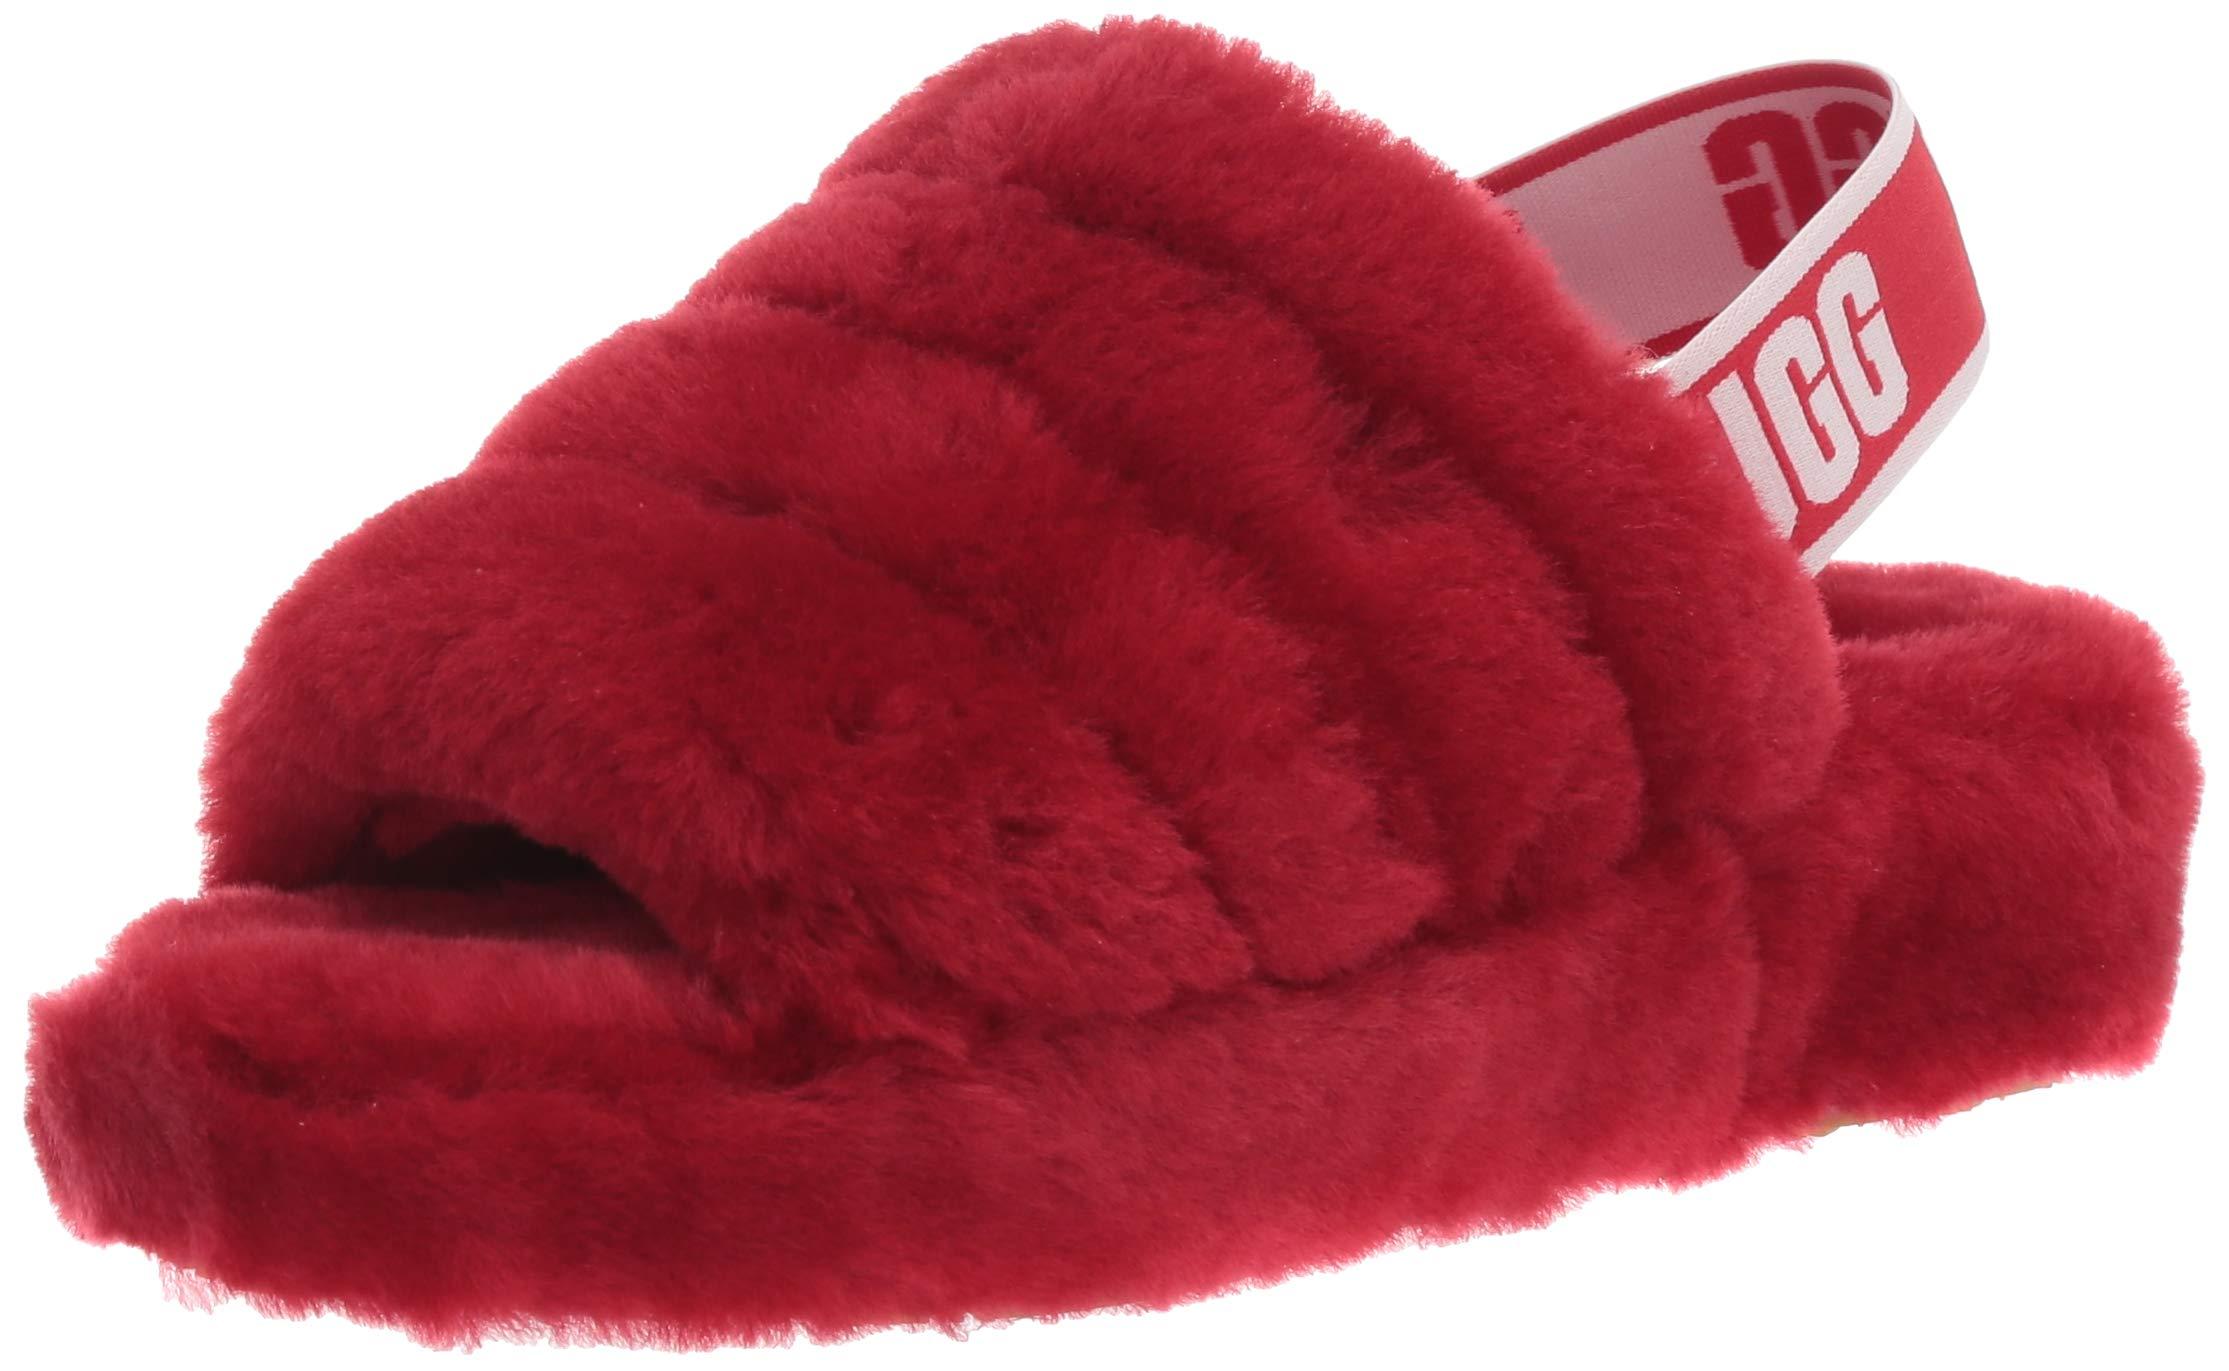 red fur ugg slides